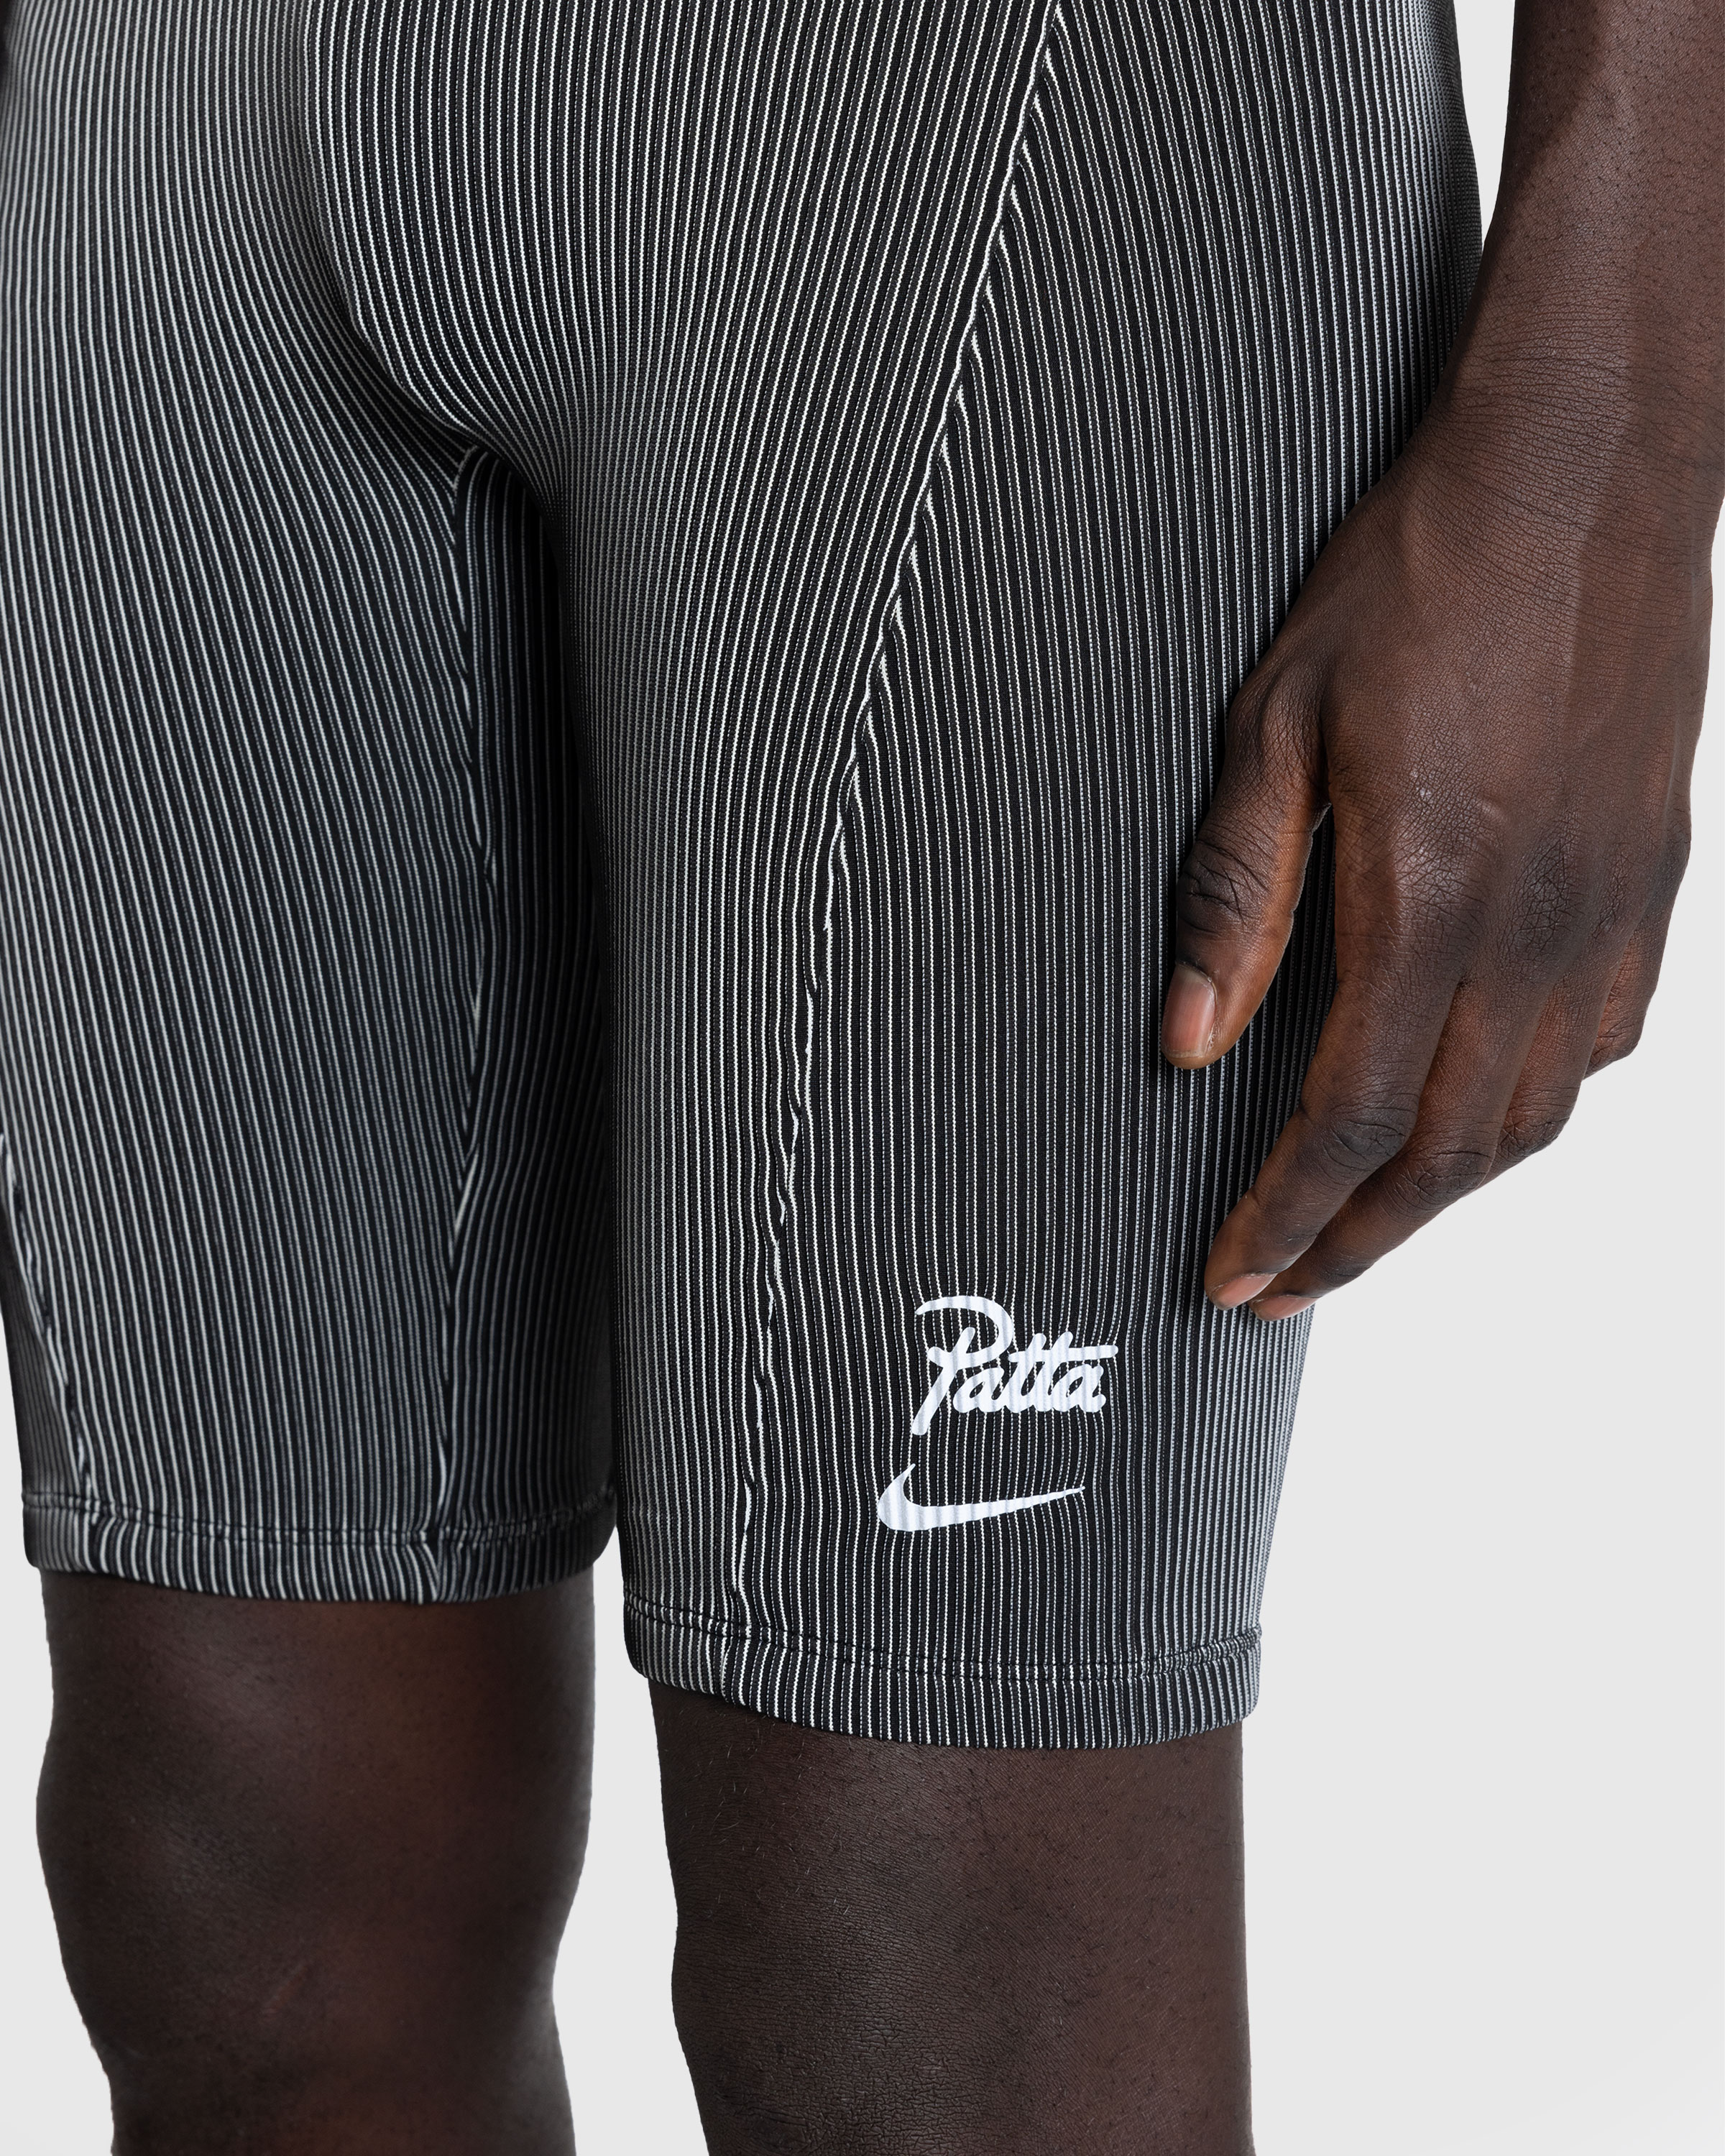 Nike x Patta – U NRG Nike x Patta Race Suit Black - Overshirt - Black - Image 7